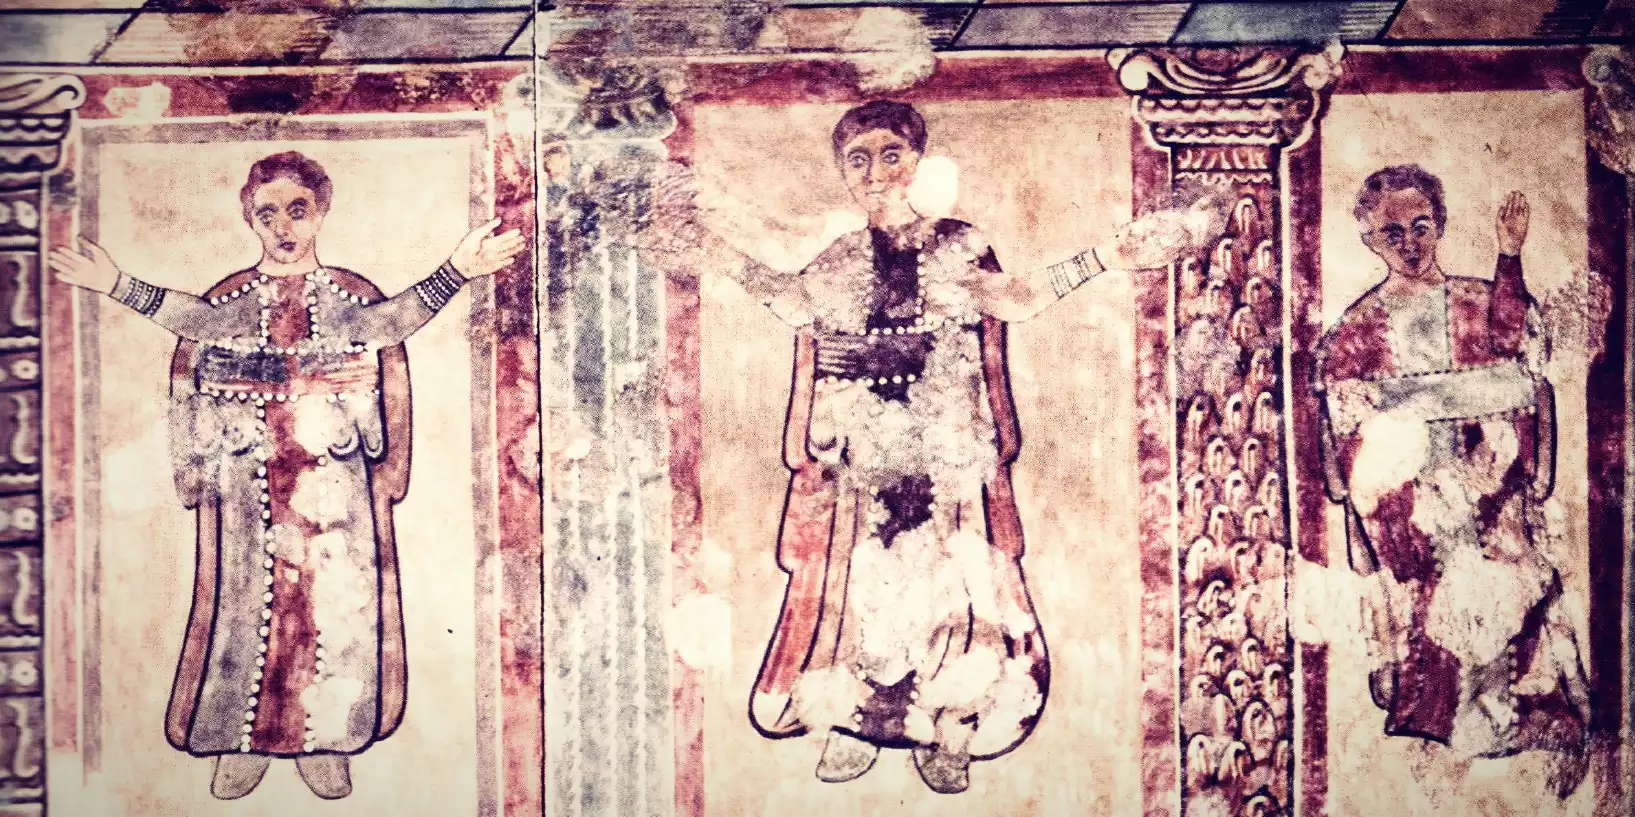 Απεικόνιση στοιχείων από την Πρώιμη Χριστιανική Τέχνη σε τοιχογραφία του 4ου αιώνα.